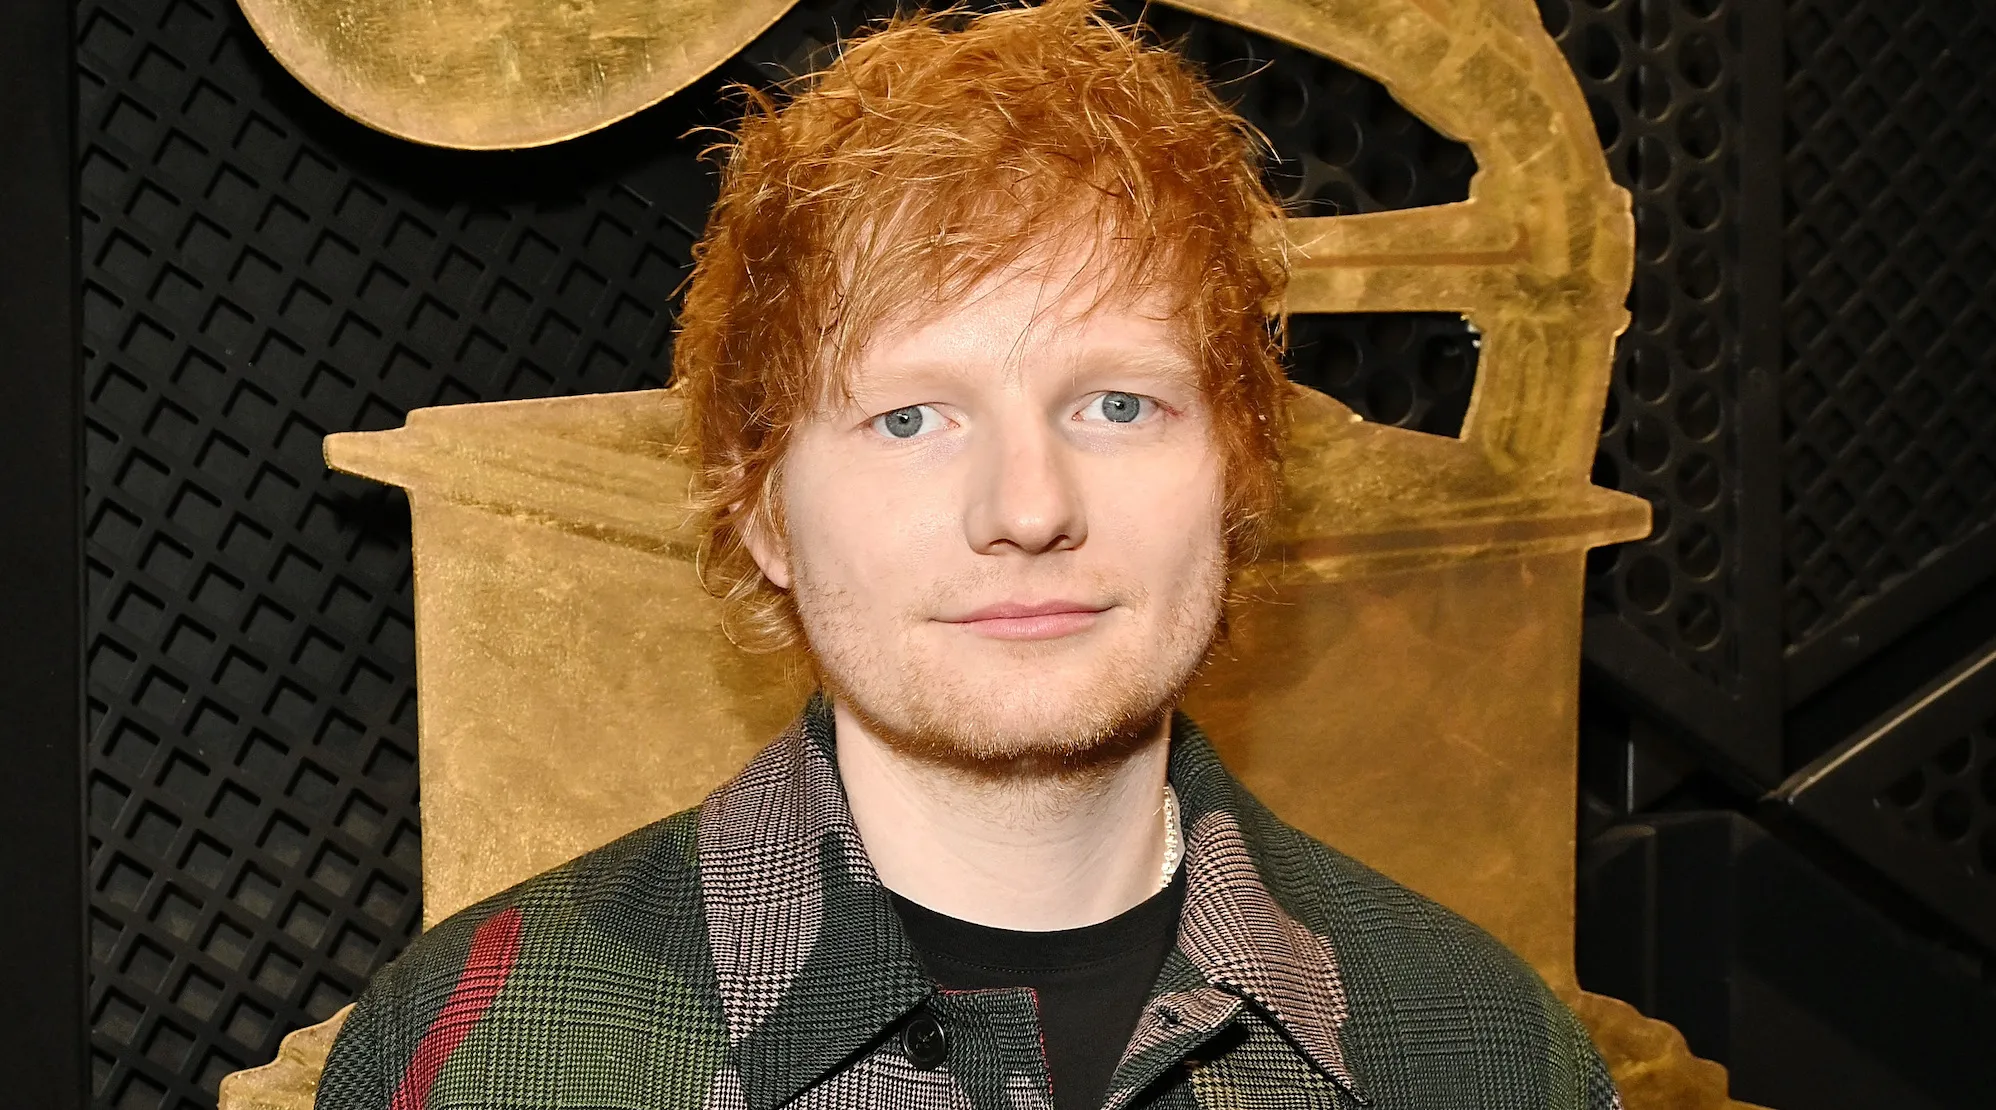 Piden que se prohíba a Ed Sheeran actuar en Malasia por su "ideología LGBT